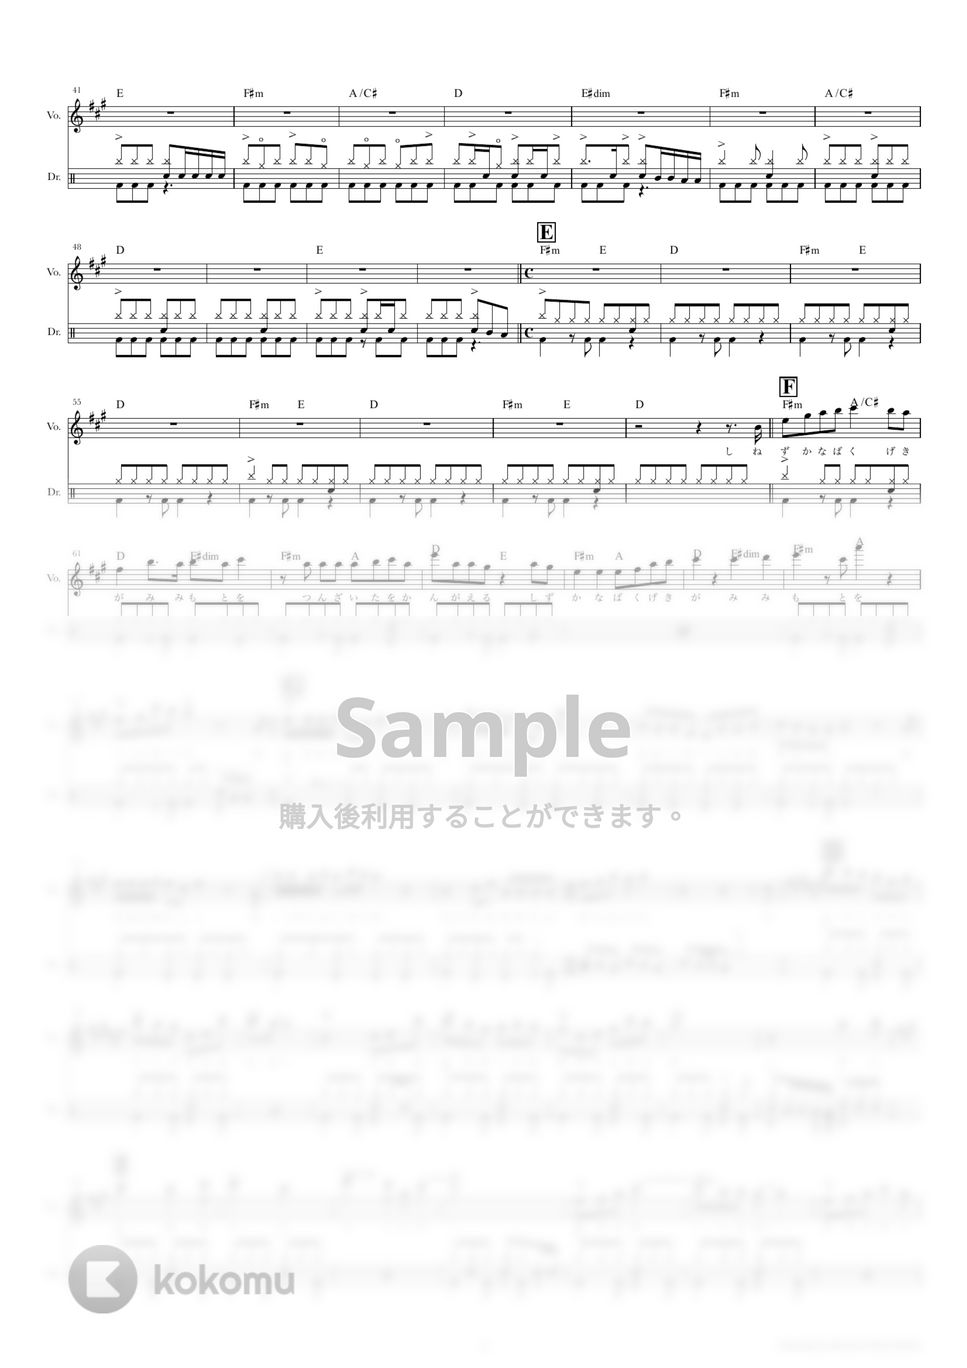 リーガルリリー - アルケミラ (ドラムスコア・歌詞・コード付き) by TRIAD GUITAR SCHOOL